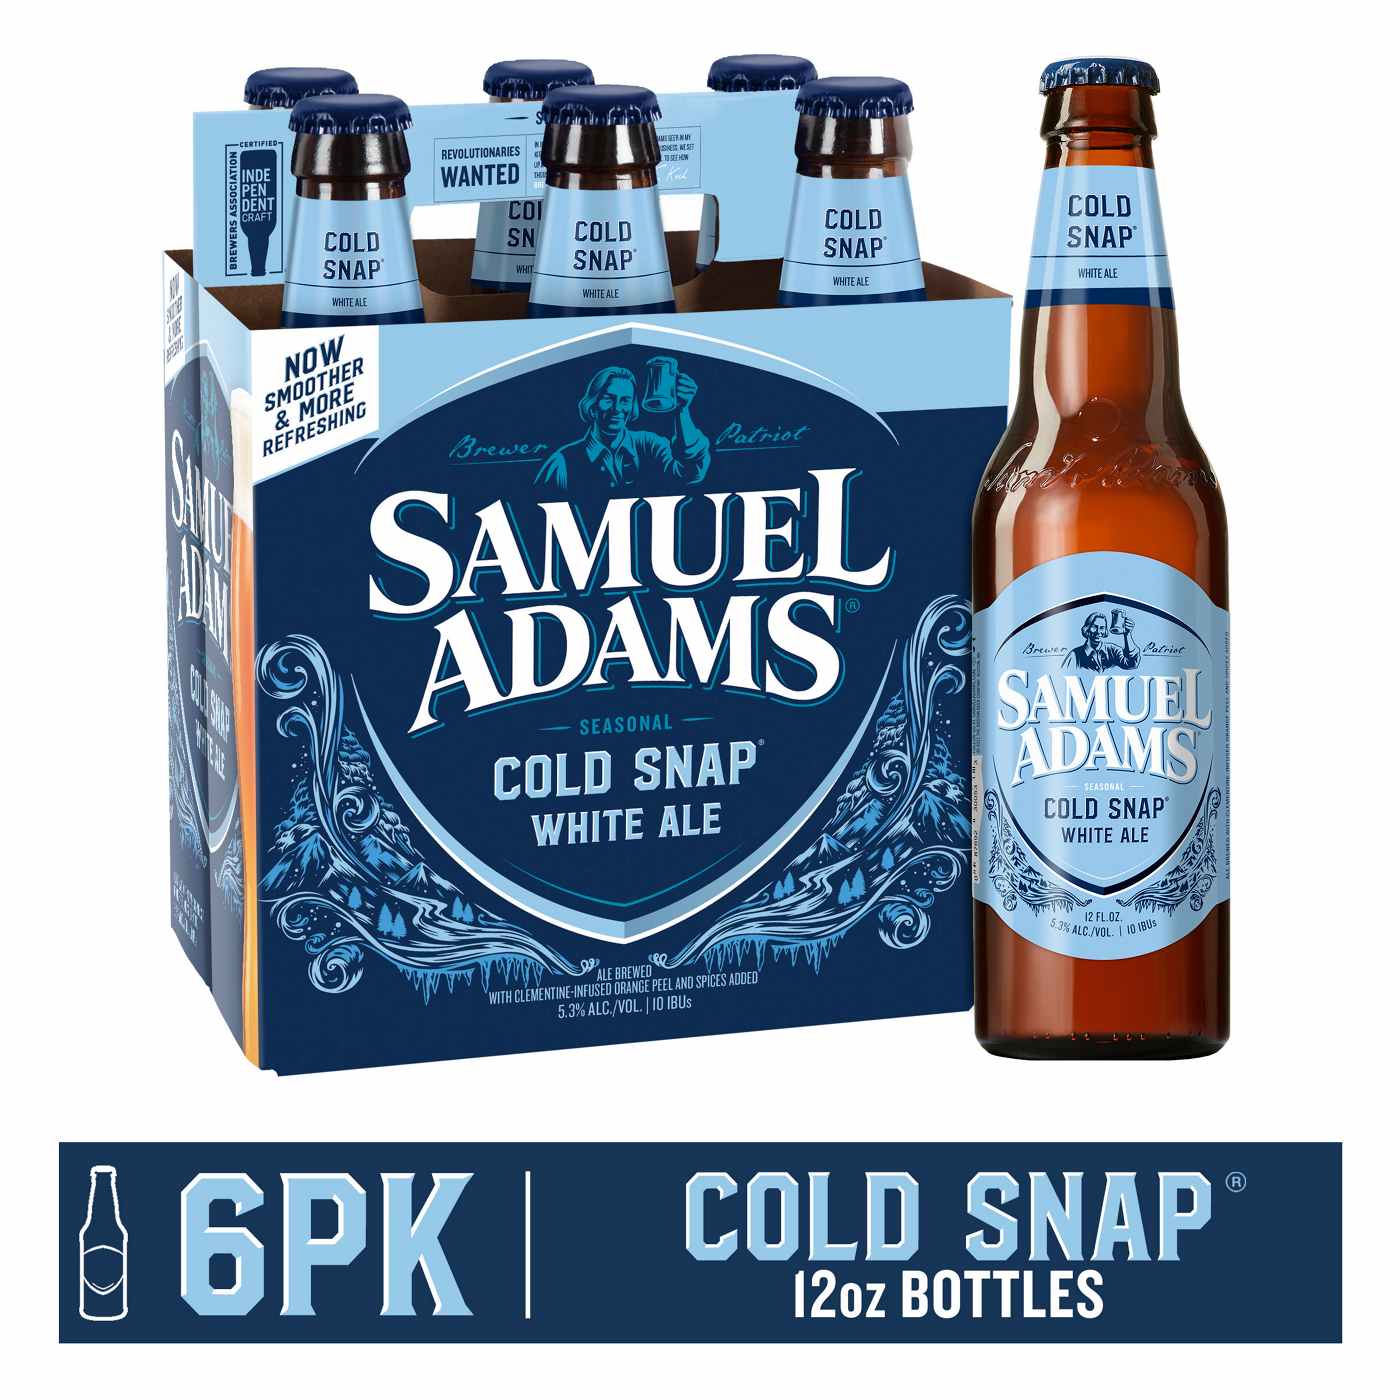 Samuel Adams Cold Snap Seasonal Beer 6 pk Bottles; image 2 of 3